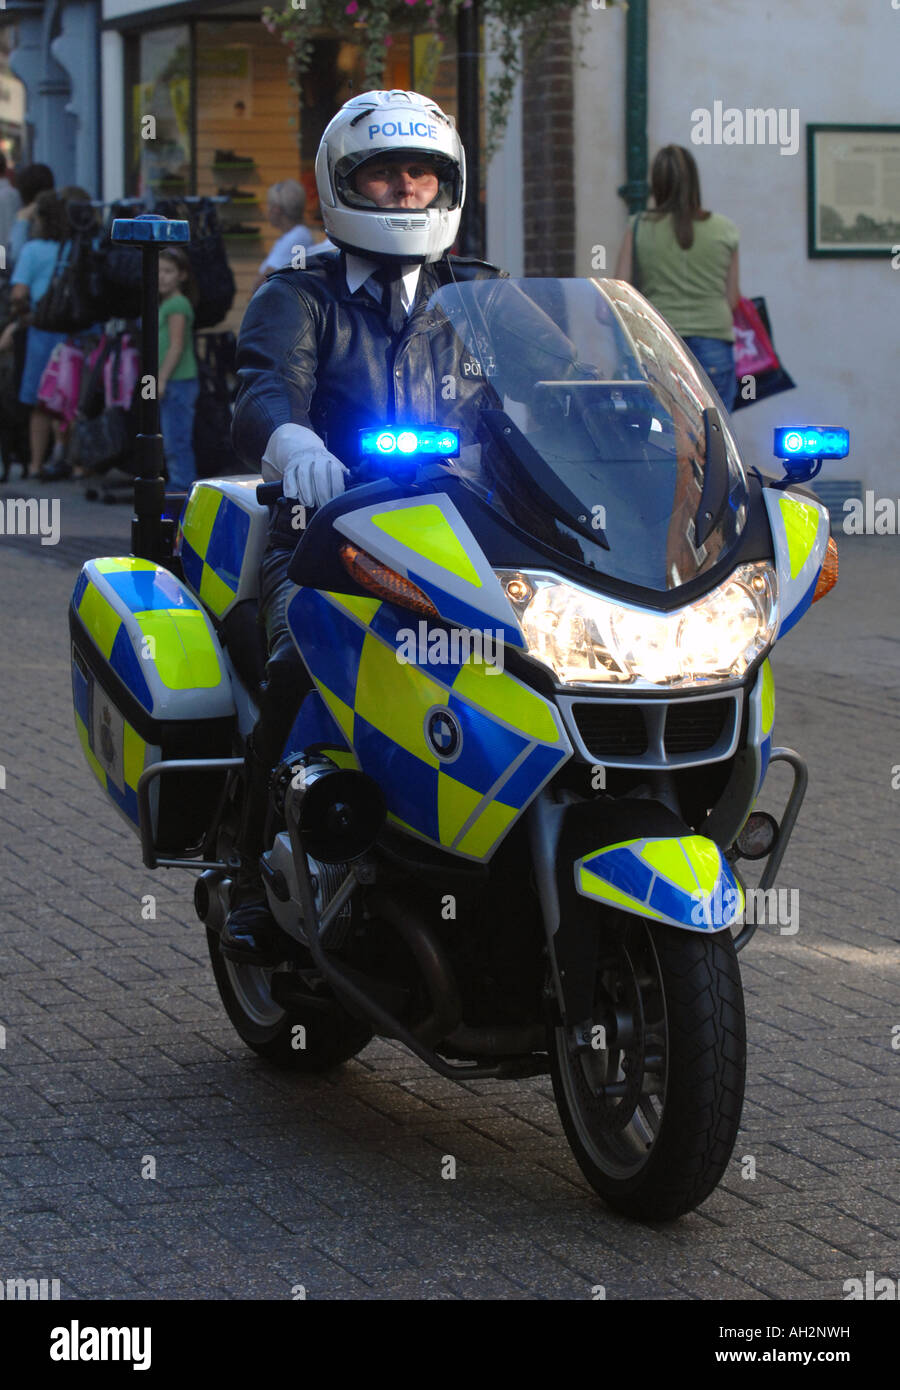 Polizei-Motorradfahrer, Polizei-Motorrad in Großbritannien UK Stockfoto